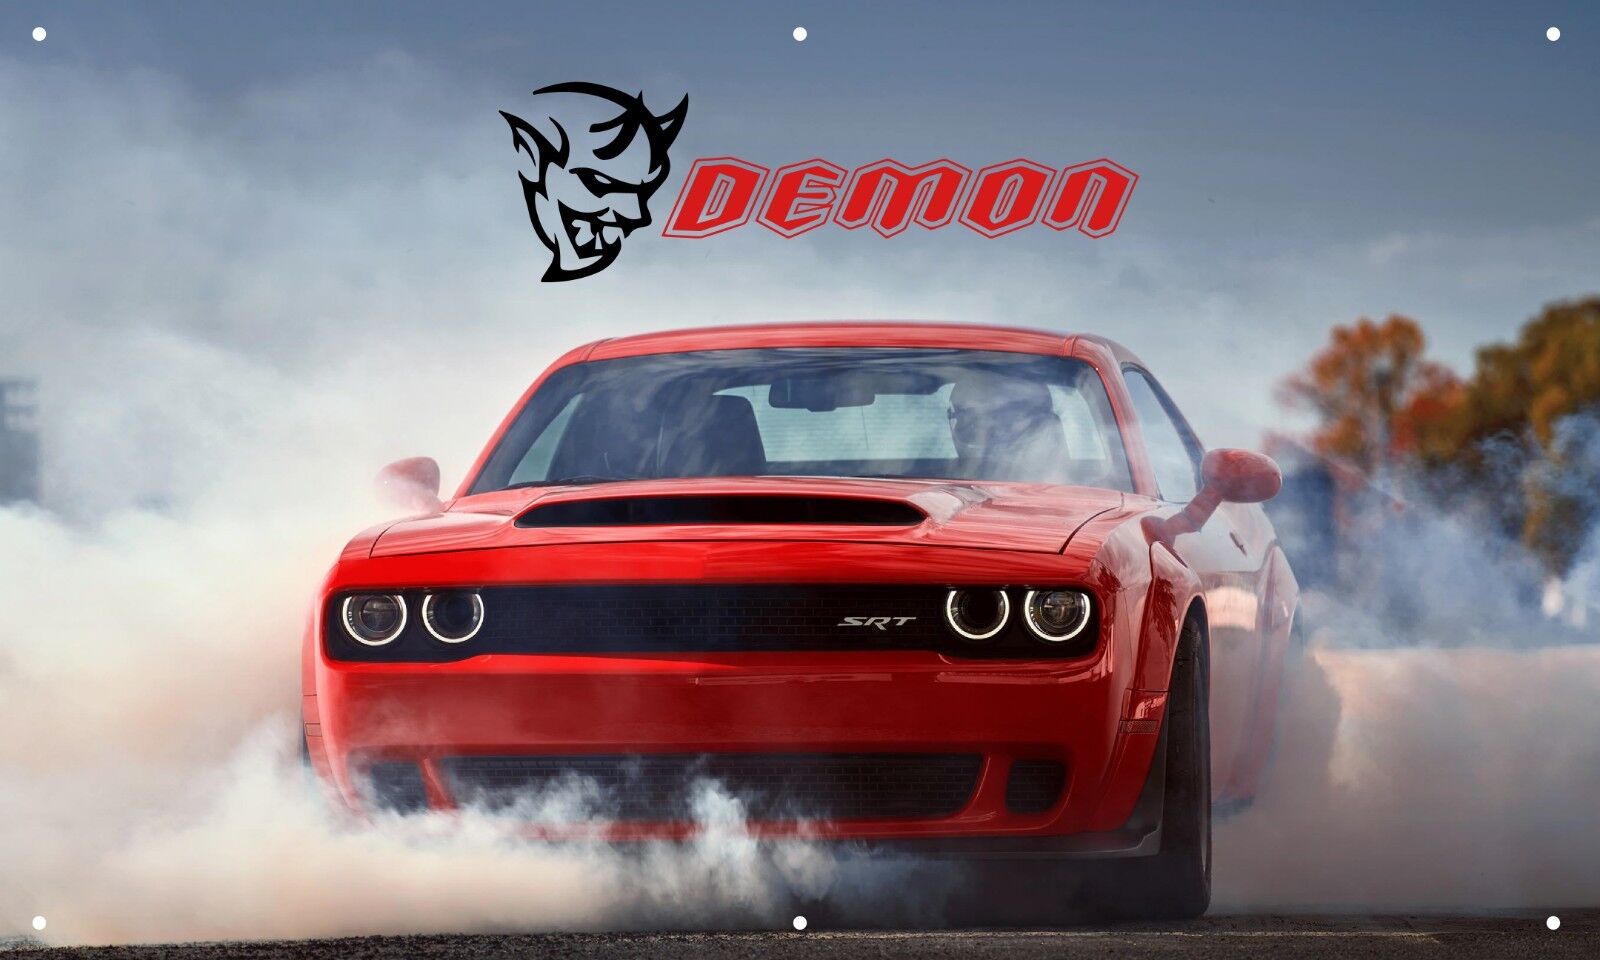 Dodge Demon Burnout 3'X5' VINYL BANNER MAN CAVE AMERICAN MUSCLE CAR RACE CAR RED